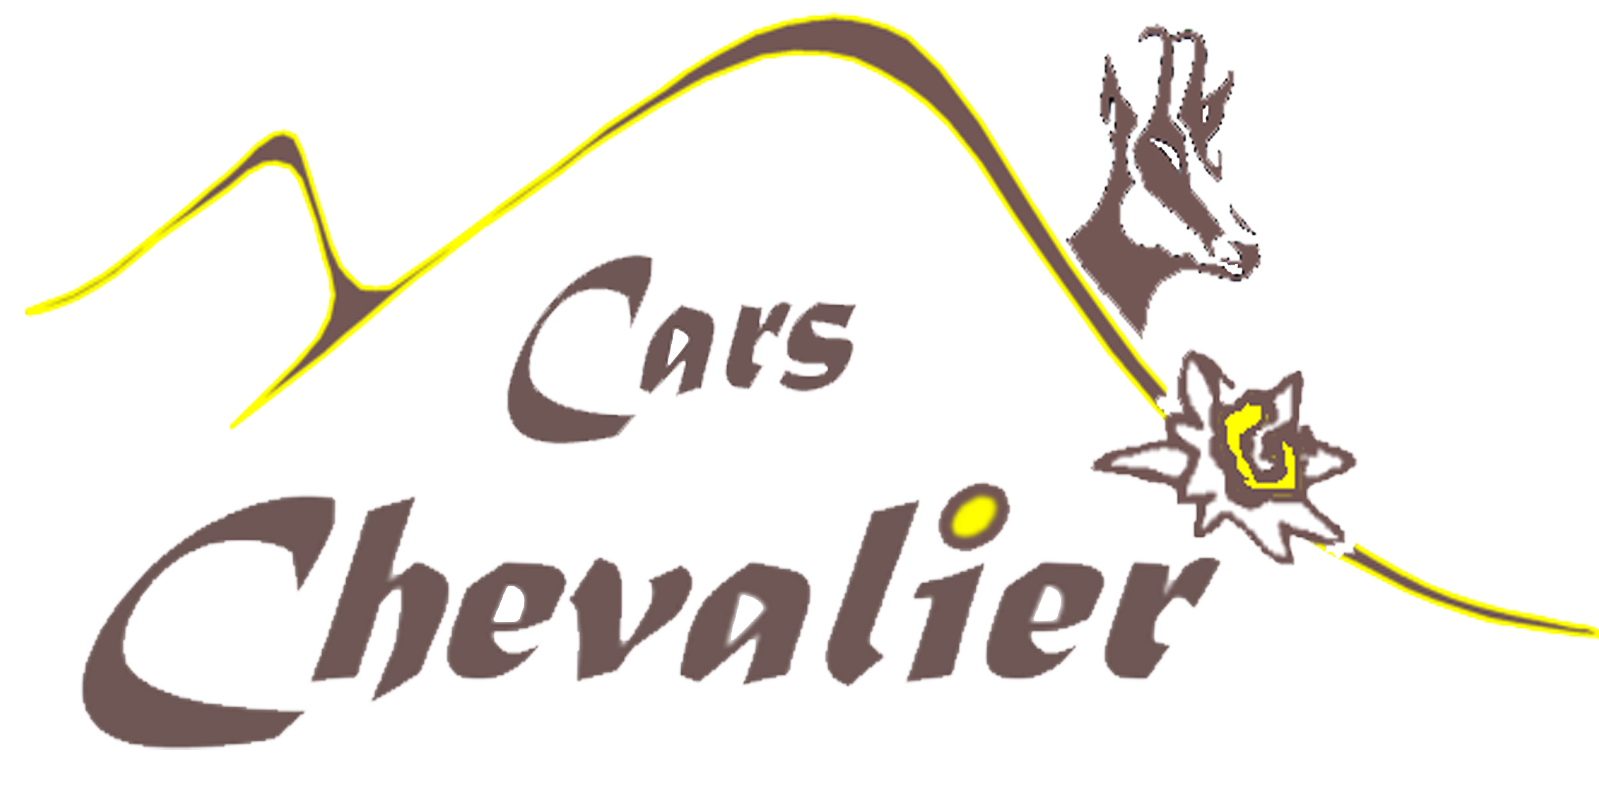 Cars Chevalier - Vous transporter dans les meilleures conditions